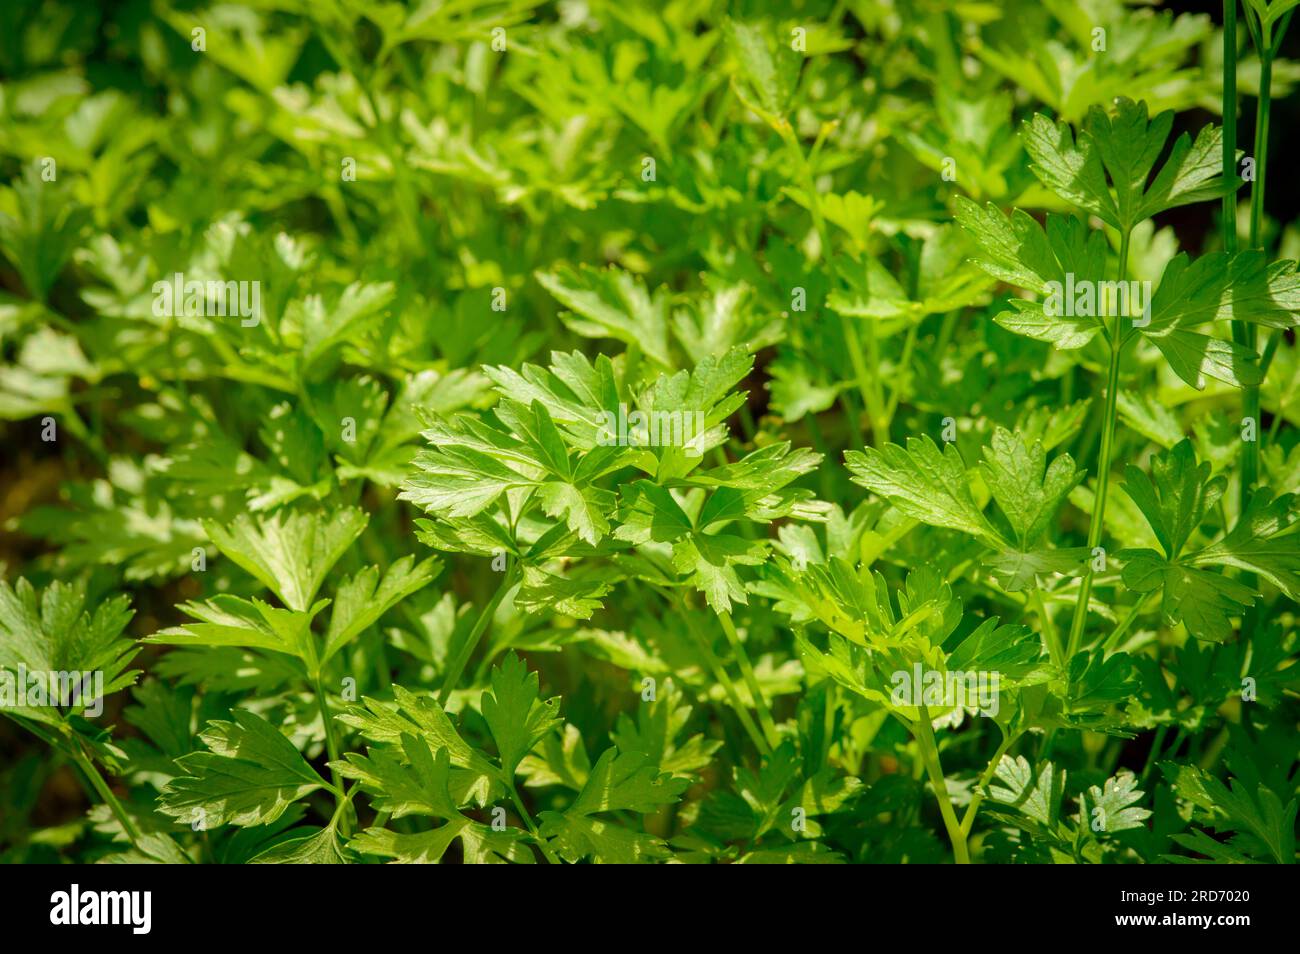 Junge grüne Petersilie, die auf einem Beet auf einem Gemüsehof wächst. Nahaufnahme von grünen Petersilie-Blättern und -Stängeln. Petersilie ist eine Quelle von Flavonoiden und Antioxidantien; Stockfoto